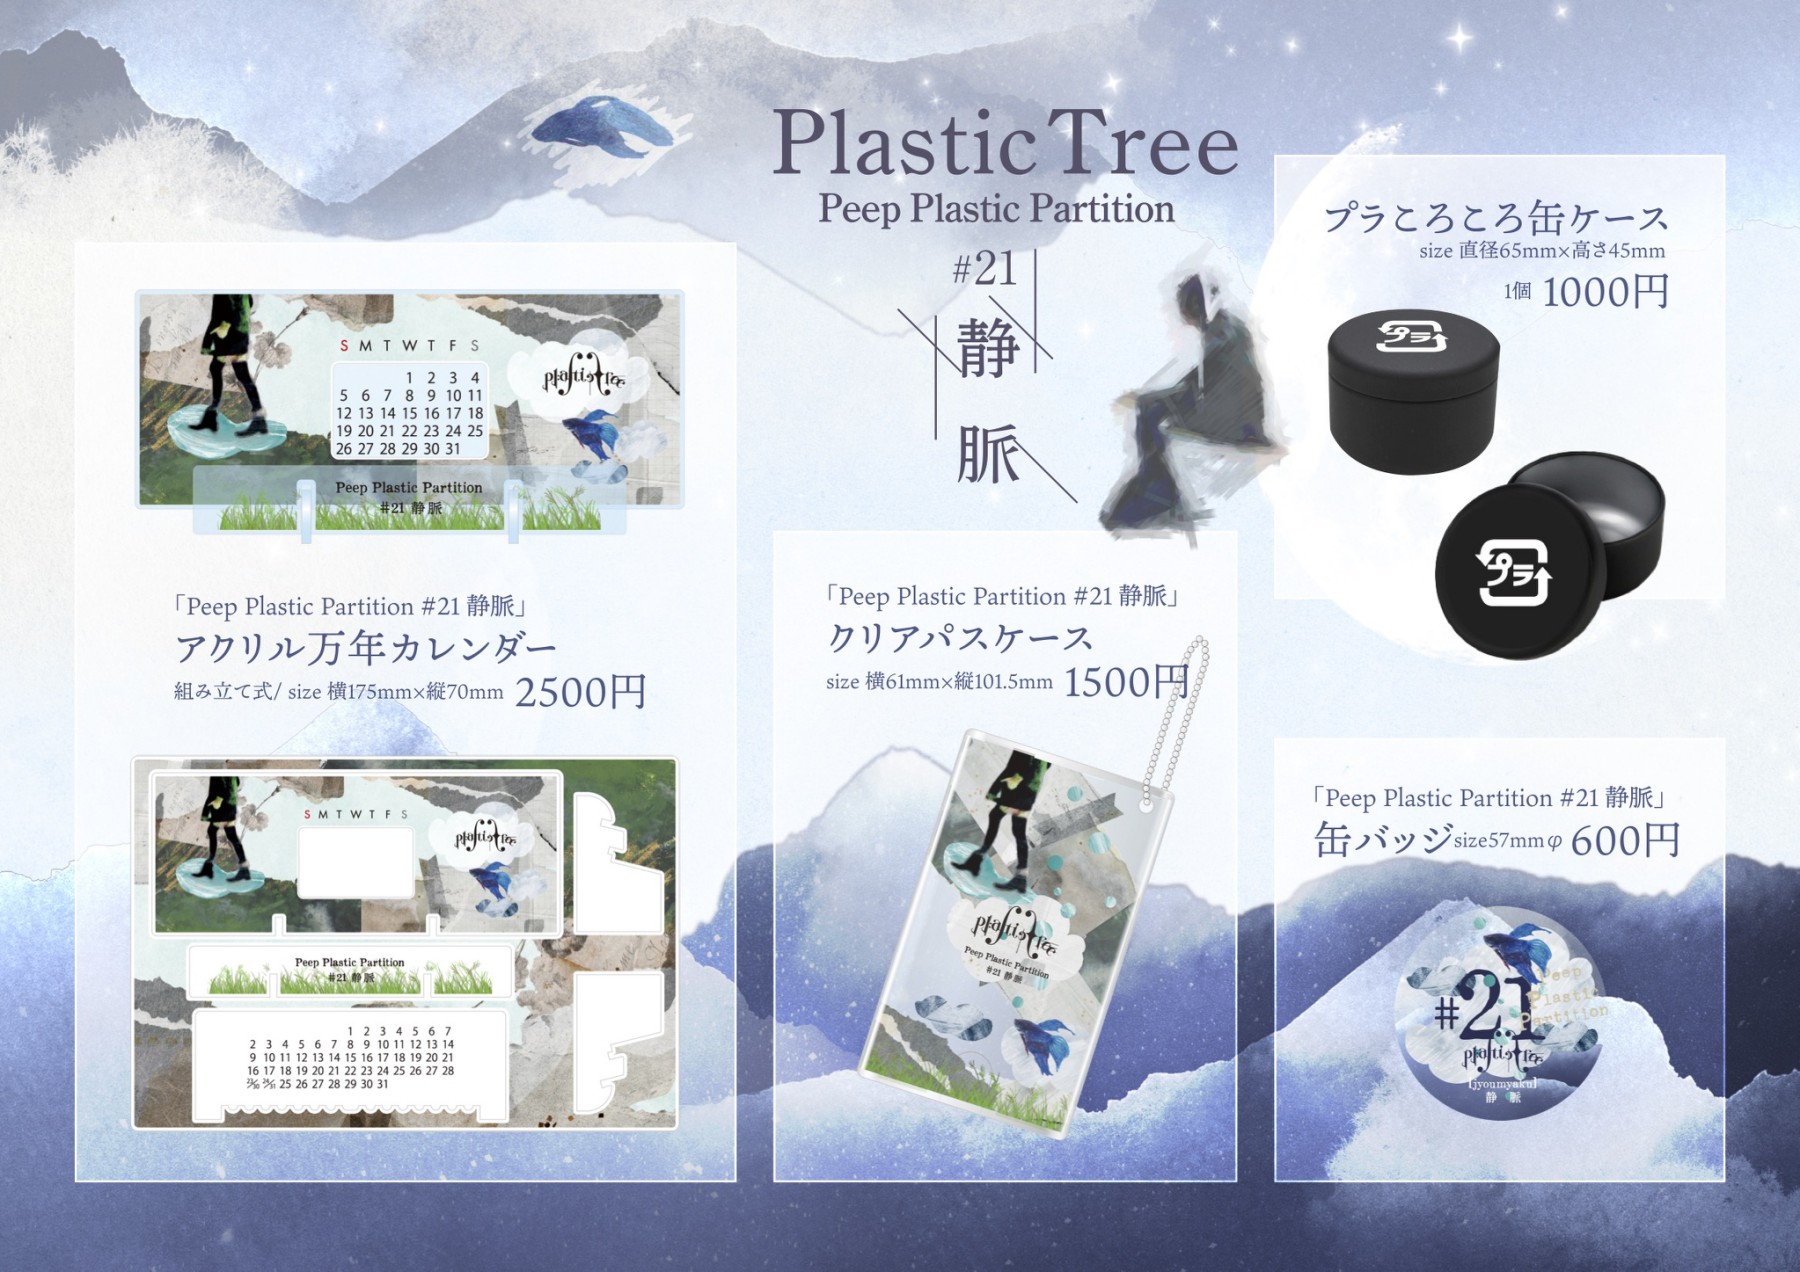 Plastic Tree「Peep Plastic Partition #21 静脈」グッズ販売の